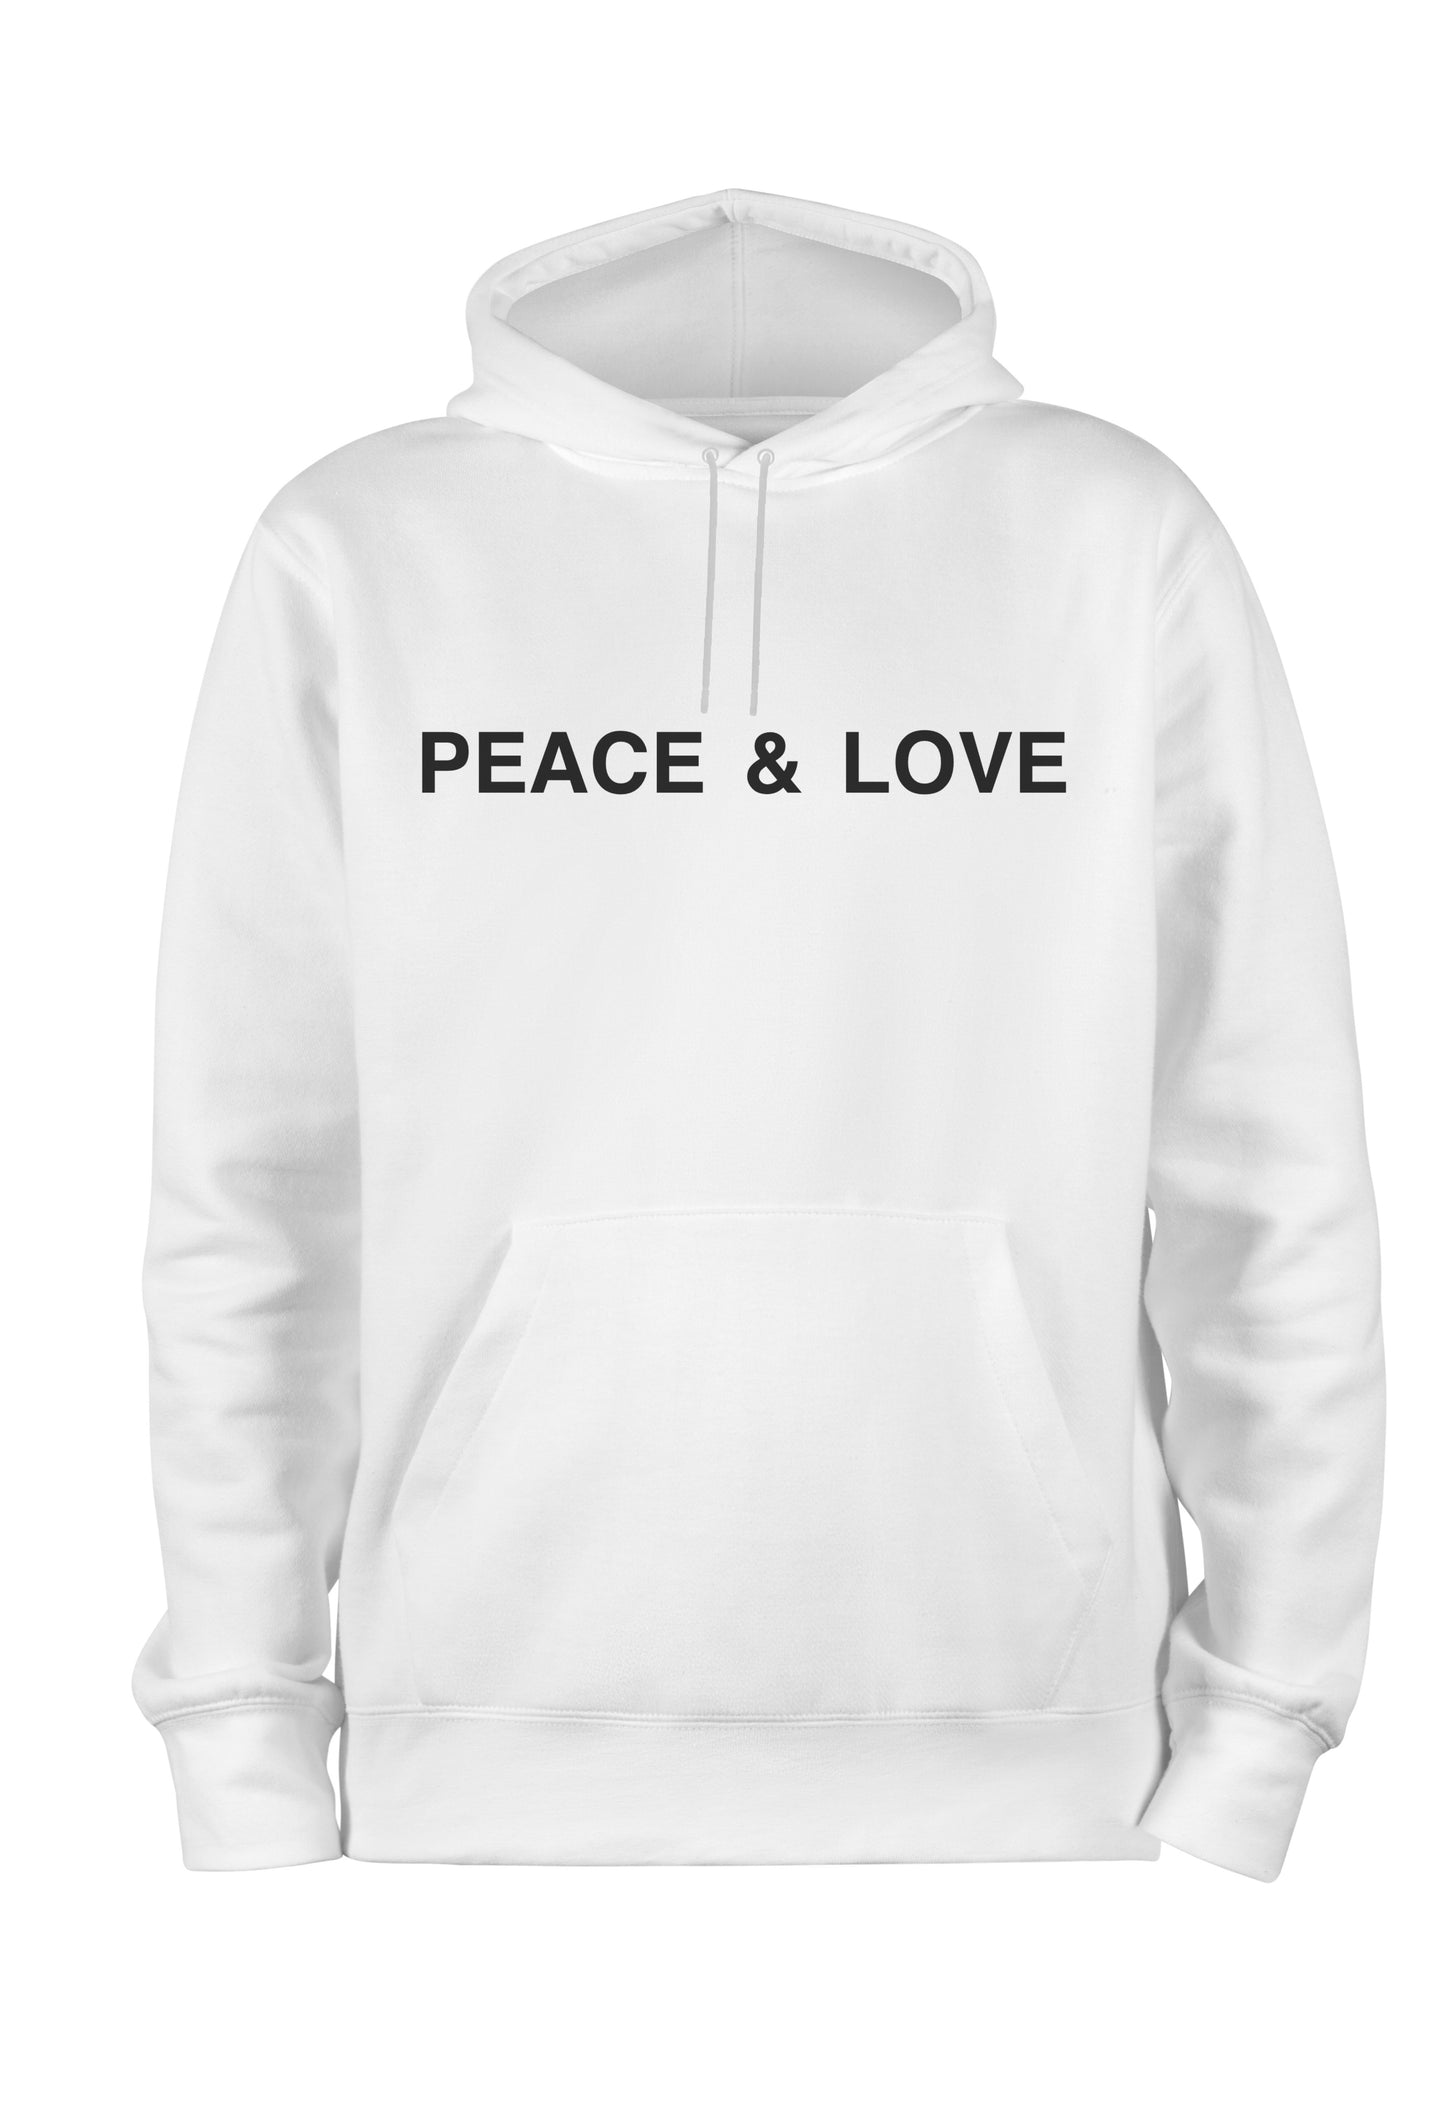 “PEACE & LOVE” HOODIE